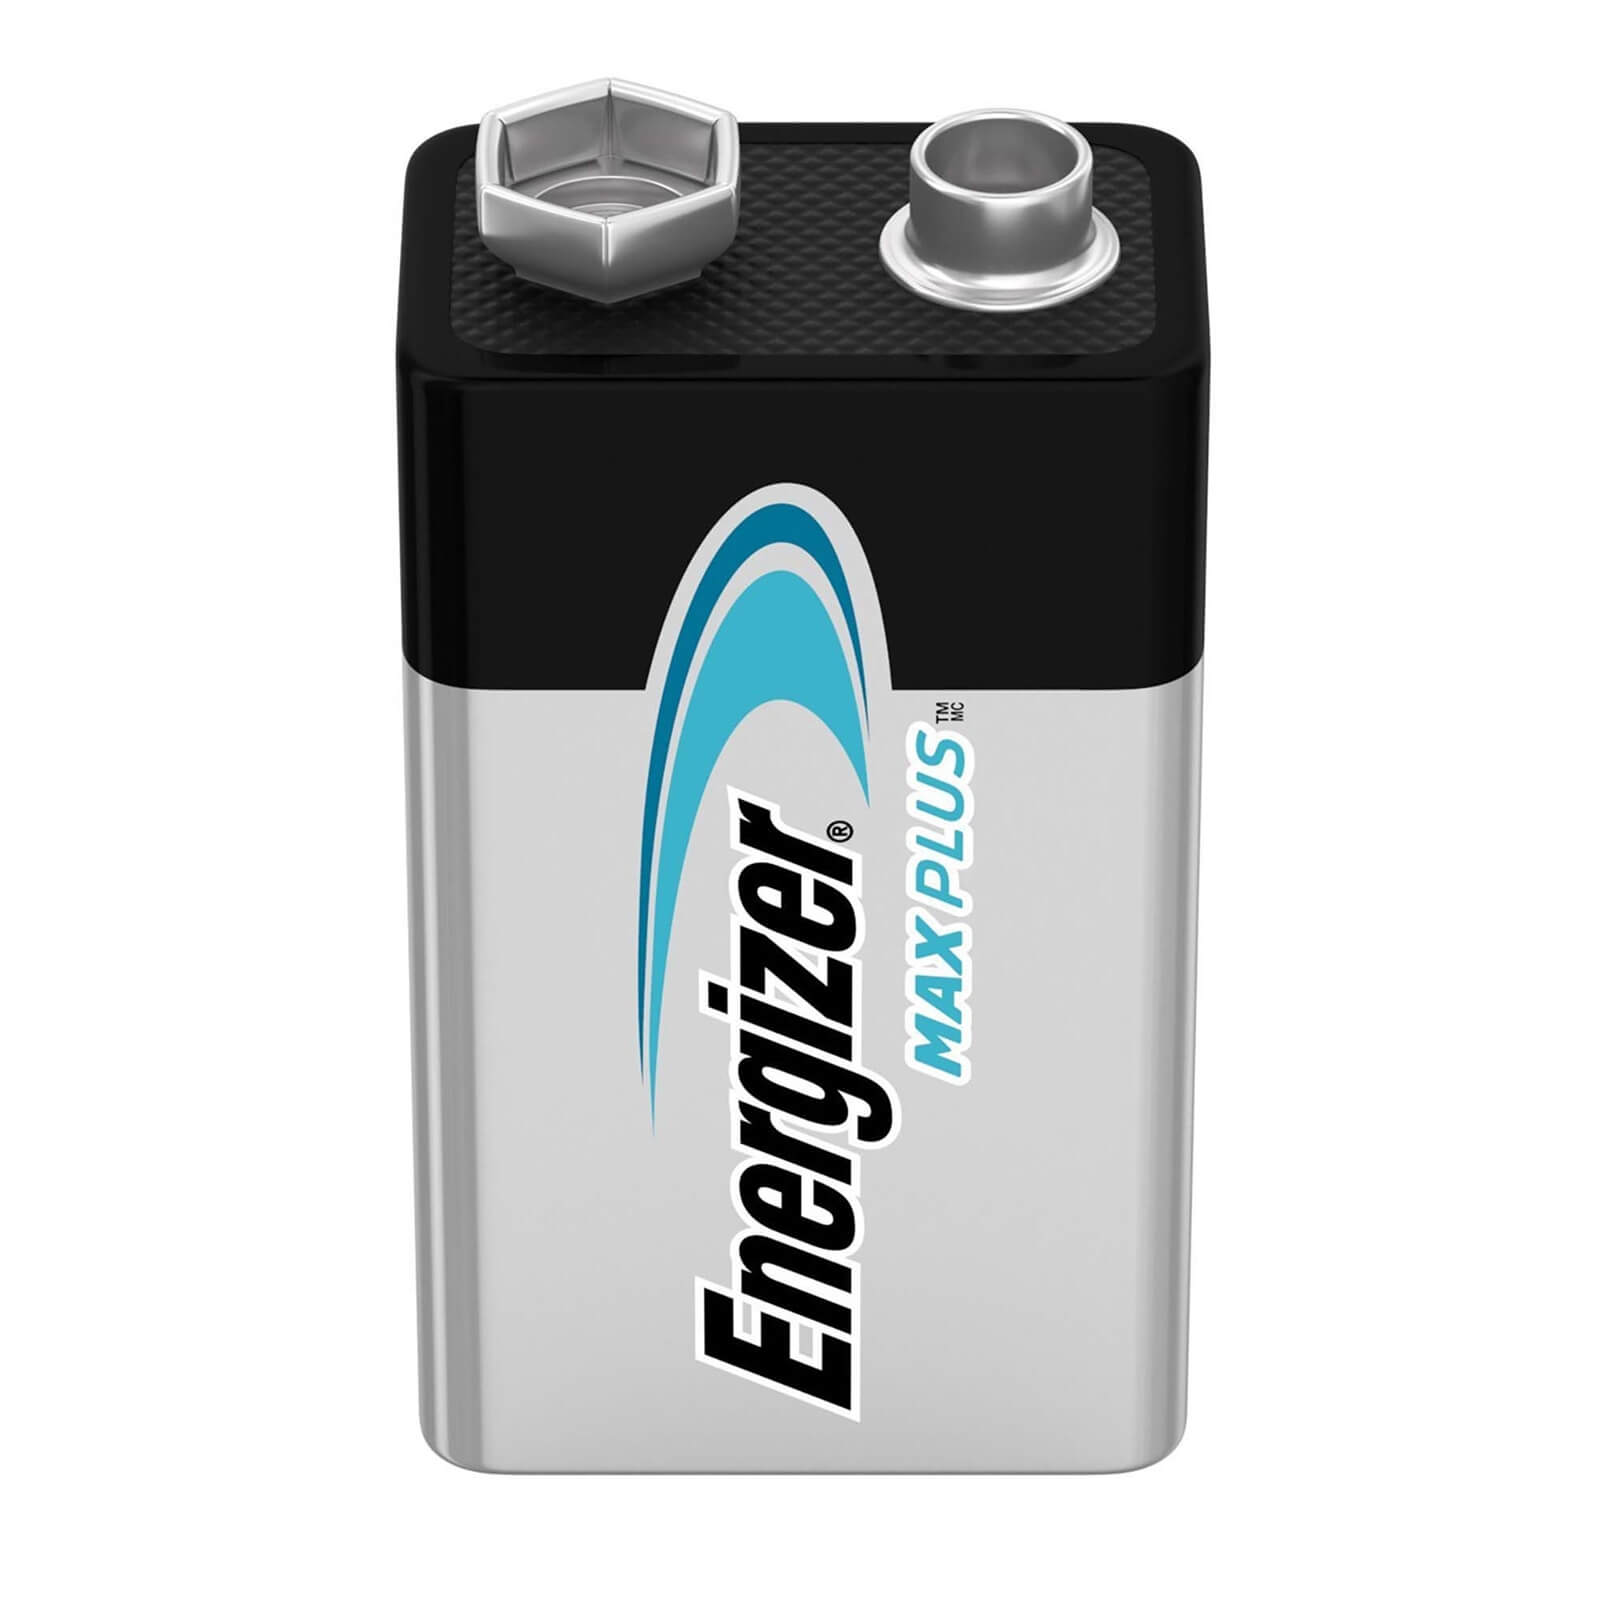 Energizer MAX PLUS Alkaline 9V Battery - 1 Pack